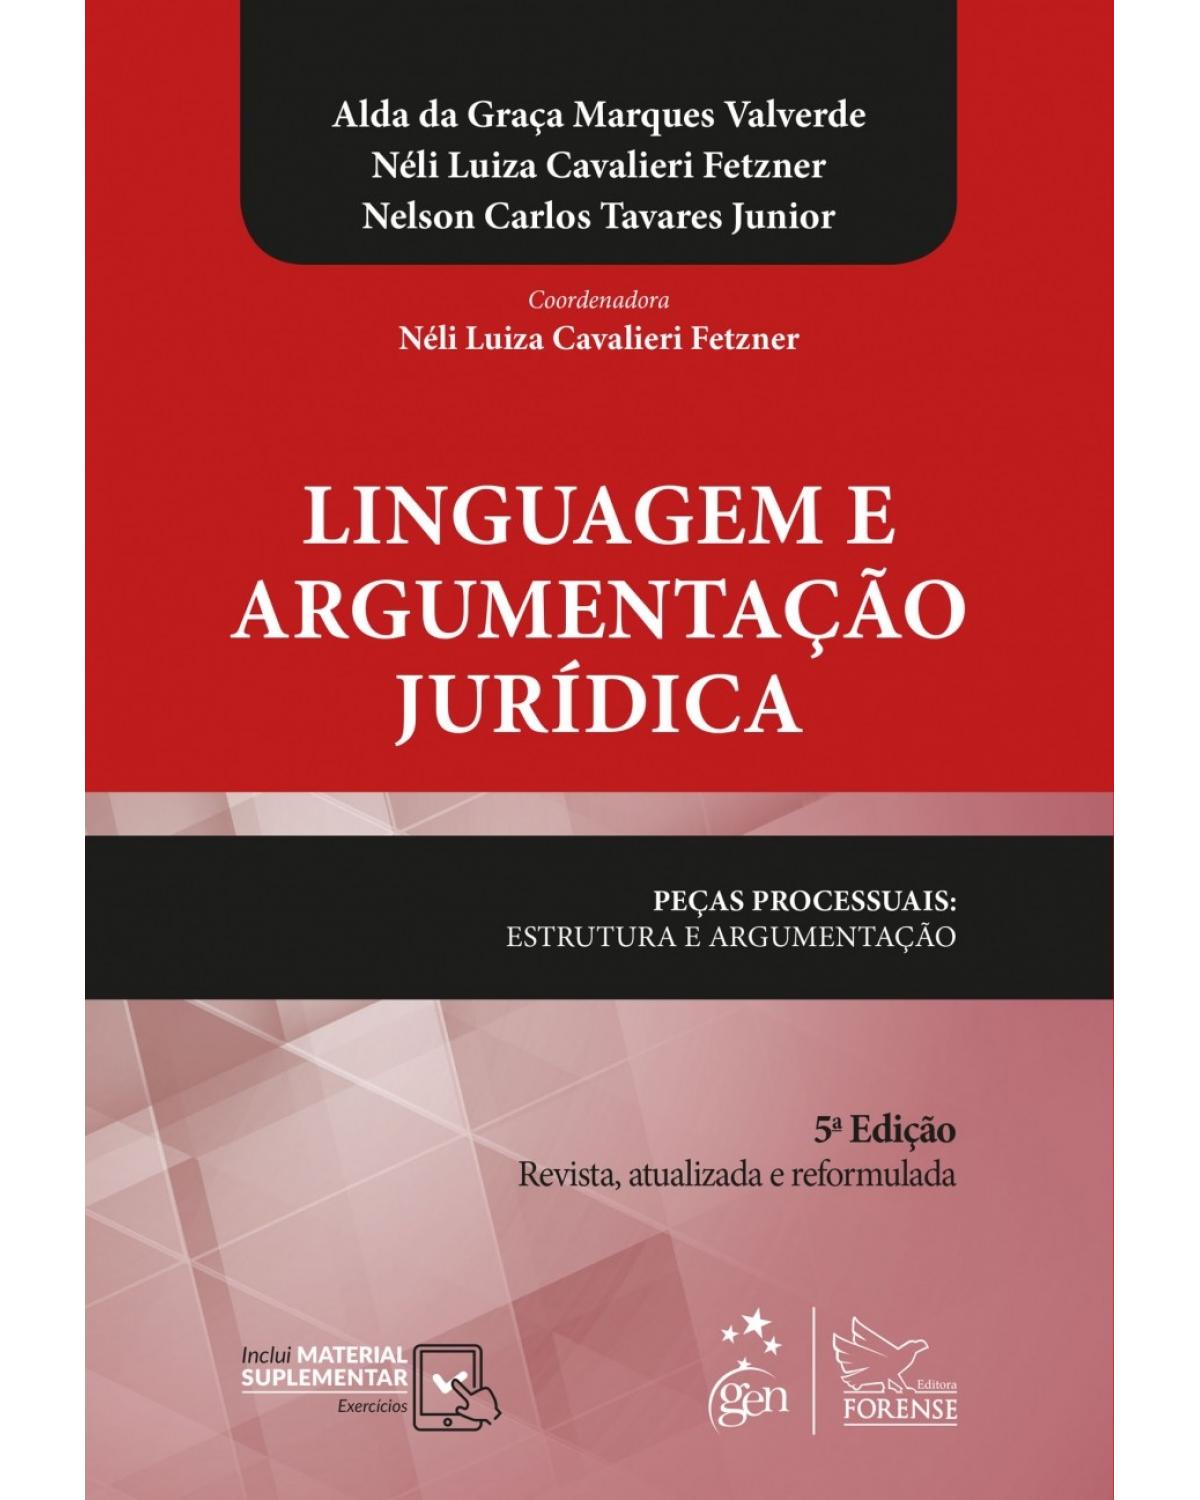 Linguagem e argumentação jurídica - peças processuais: estrutura e argumentação - 5ª Edição | 2018